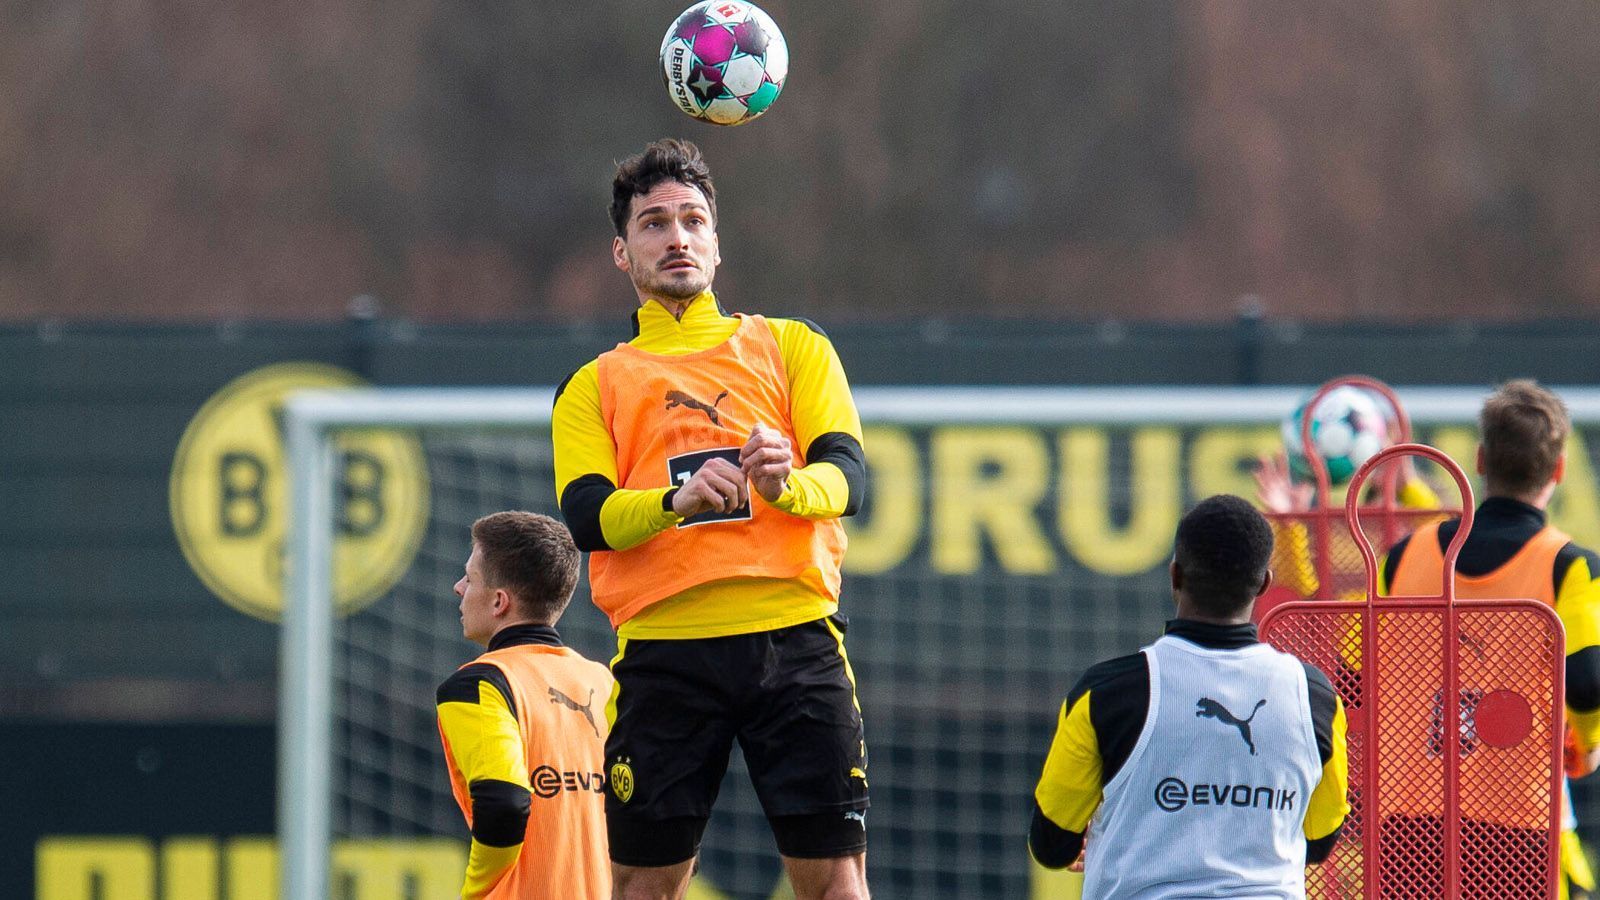 
                <strong>Mats Hummels</strong><br>
                Der 32-Jährige ist bei Borussia Dortmund gesetzt und tritt auch gerne als Meinungsführer in Erscheinung. Drei Tore gelangen Hummels bislang in dieser Bundesliga-Saison bei 23 Einsätzen. Insgesamt bringt er über 87 Prozent seiner Pässe an den Mann. 
              